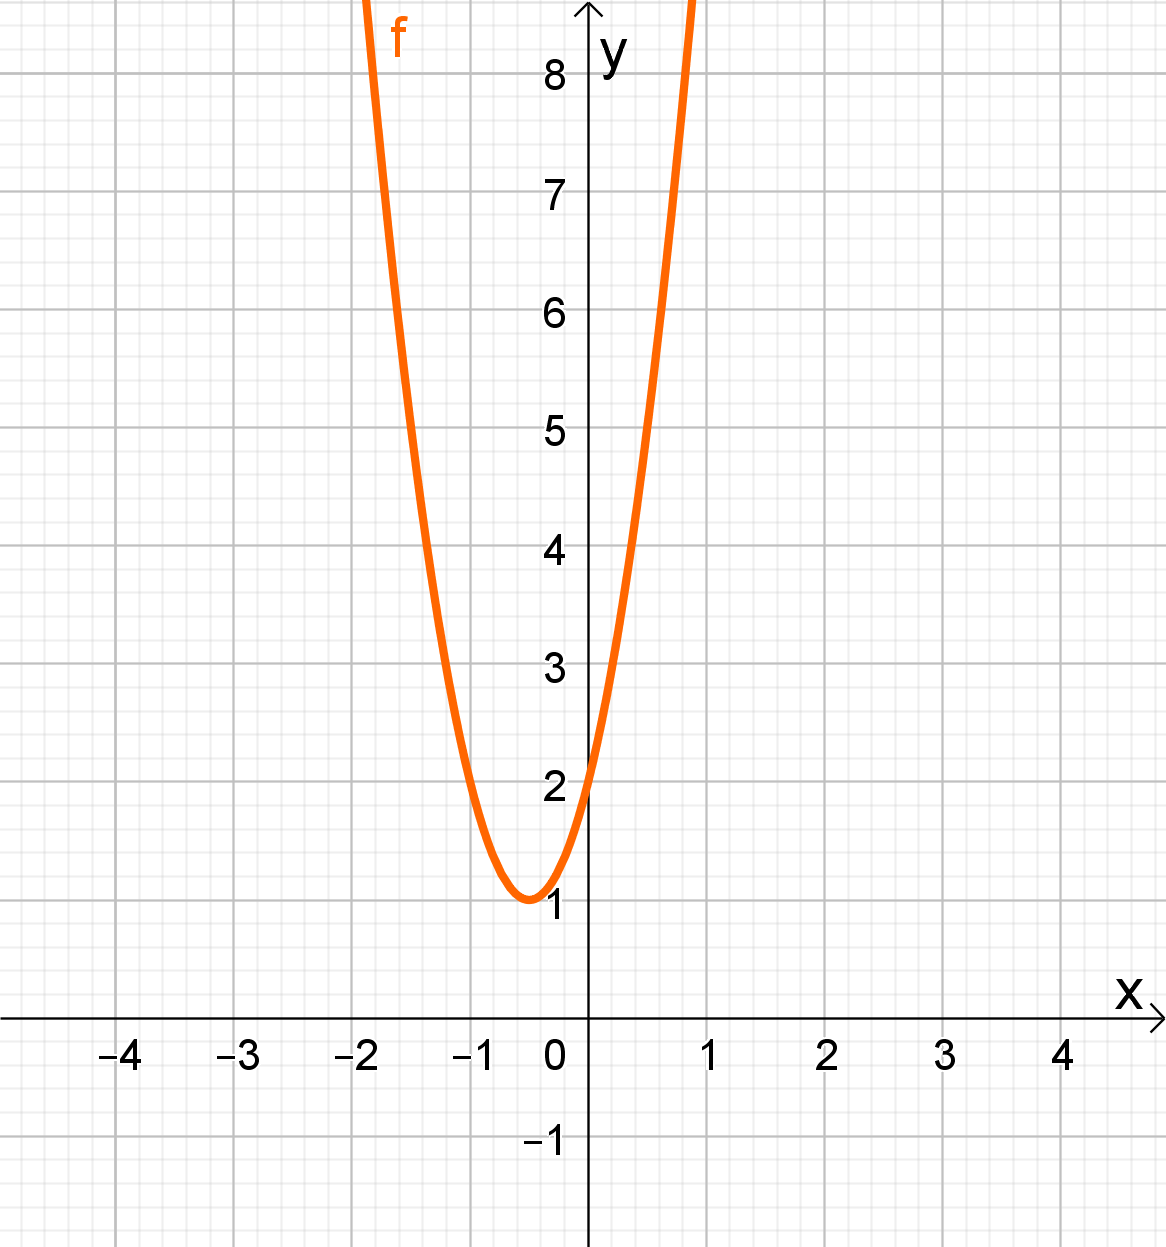 Graf parabole ako su nulišta kompleksni brojevi- nema sjecišta parabole s x osi